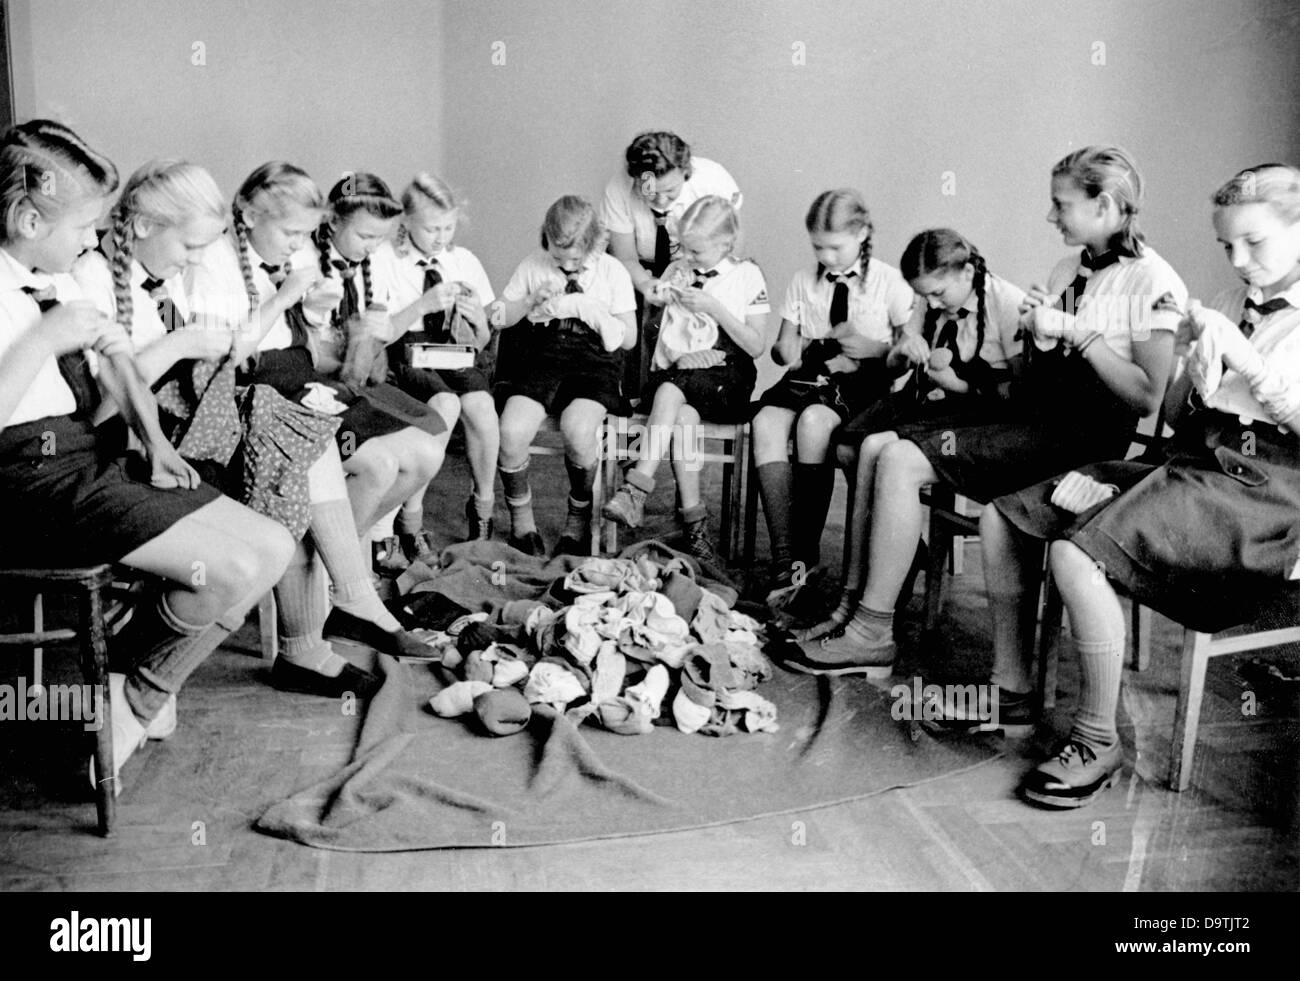 Les filles, portant un uniforme de la Ligue allemande des filles (BDM), se trouvent dans un camp du Programme d'évacuation des enfants, en novembre 1943. Fotoarchiv für Zeitgeschichte Banque D'Images